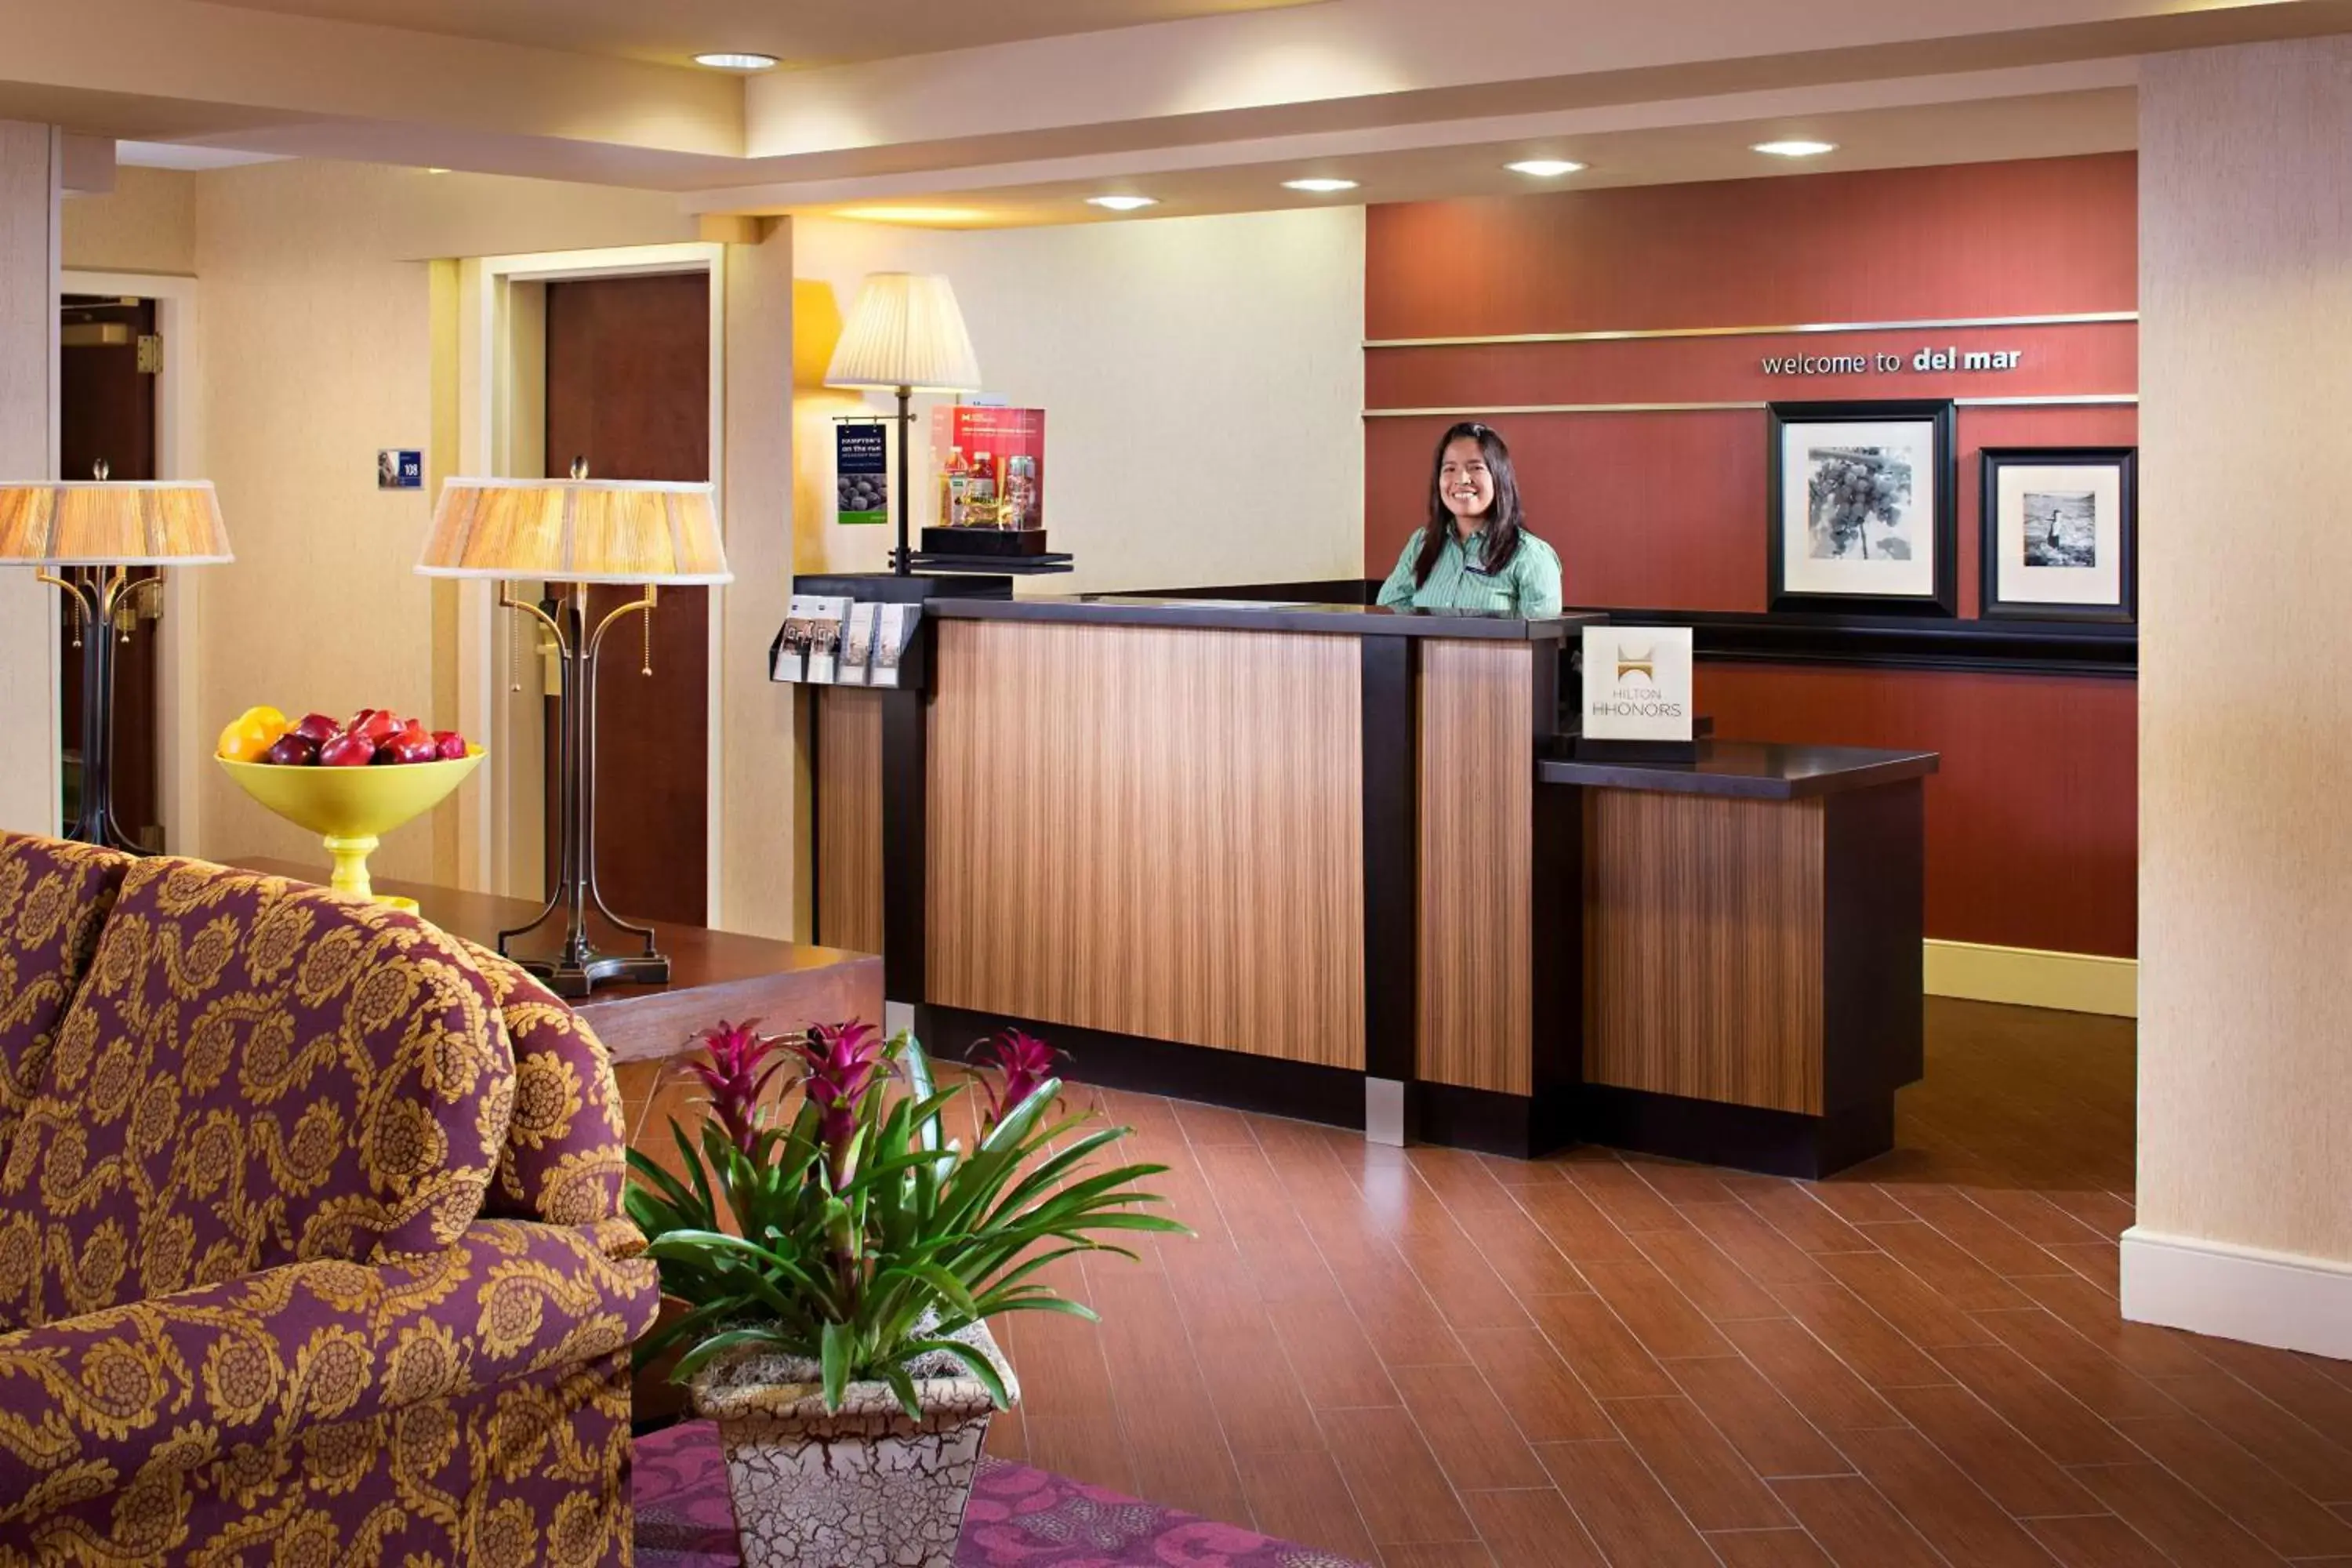 Lobby or reception, Lobby/Reception in Hampton Inn San Diego/Del Mar